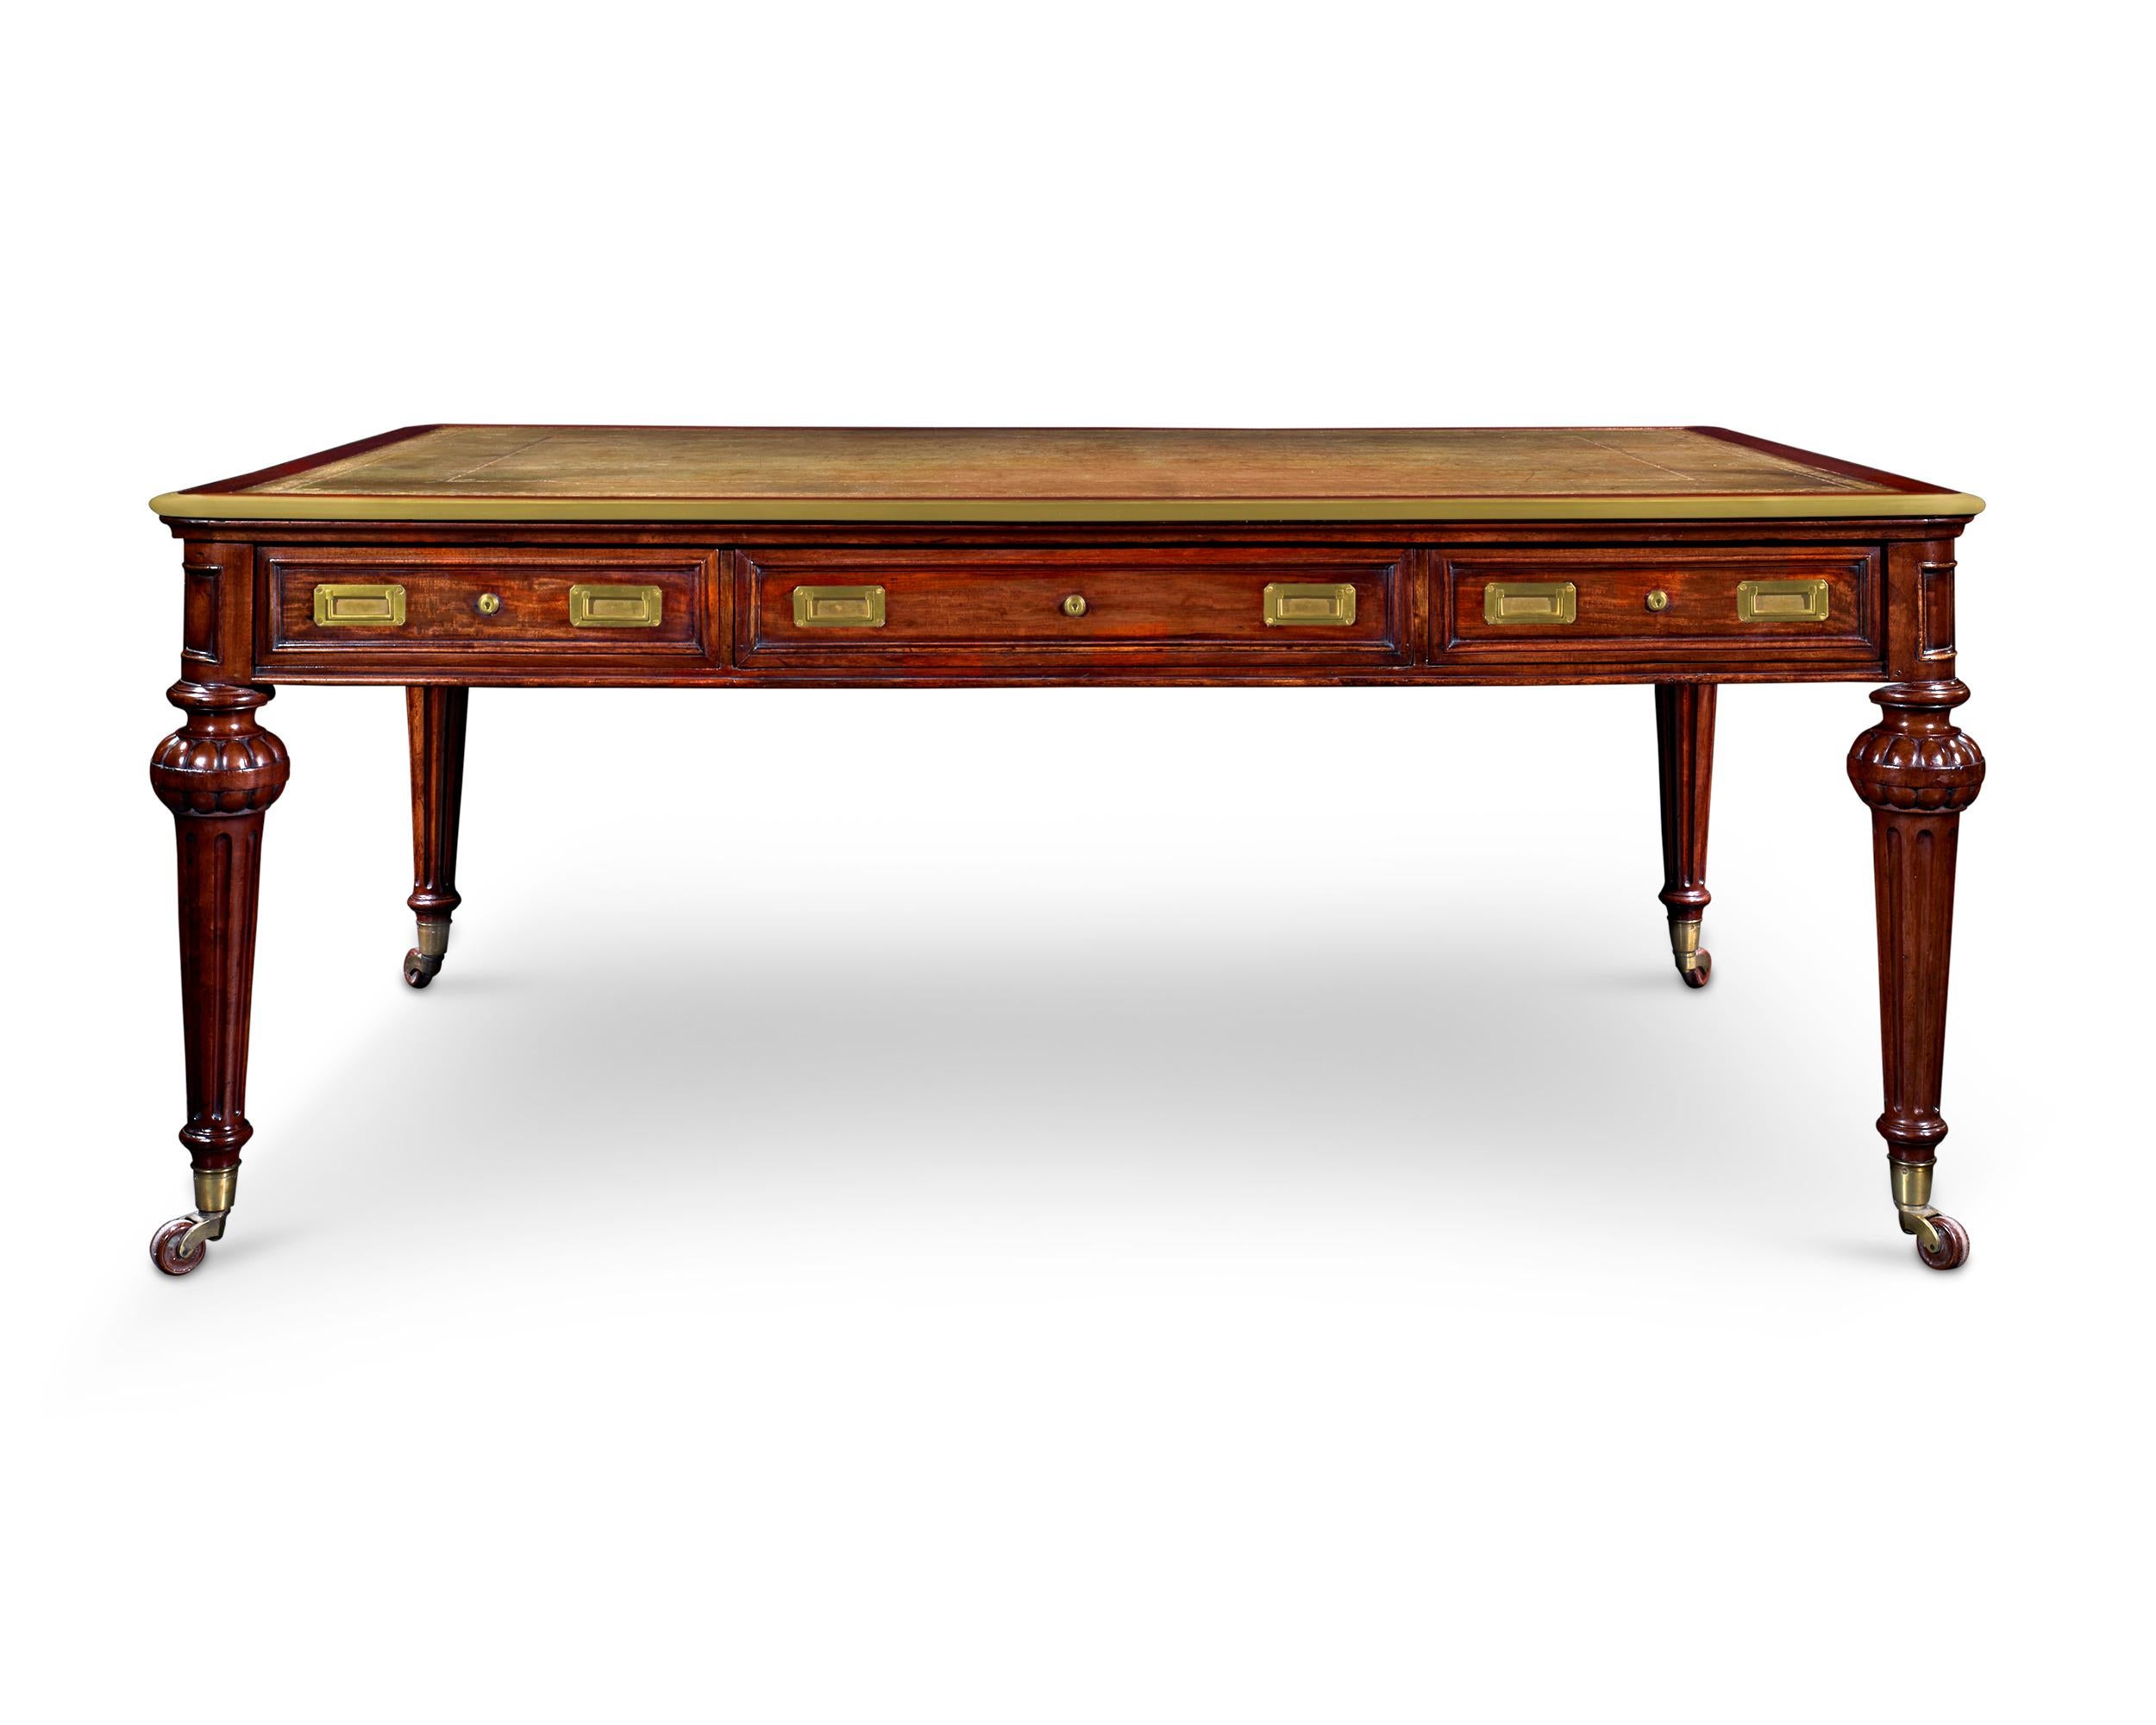 Cette belle table de bibliothèque est un exemple remarquable de l'ameublement anglais qui représentait les goûts des riches de l'époque victorienne. La pièce est attribuée à Holland & Sons, une entreprise considérée comme l'un des plus importants